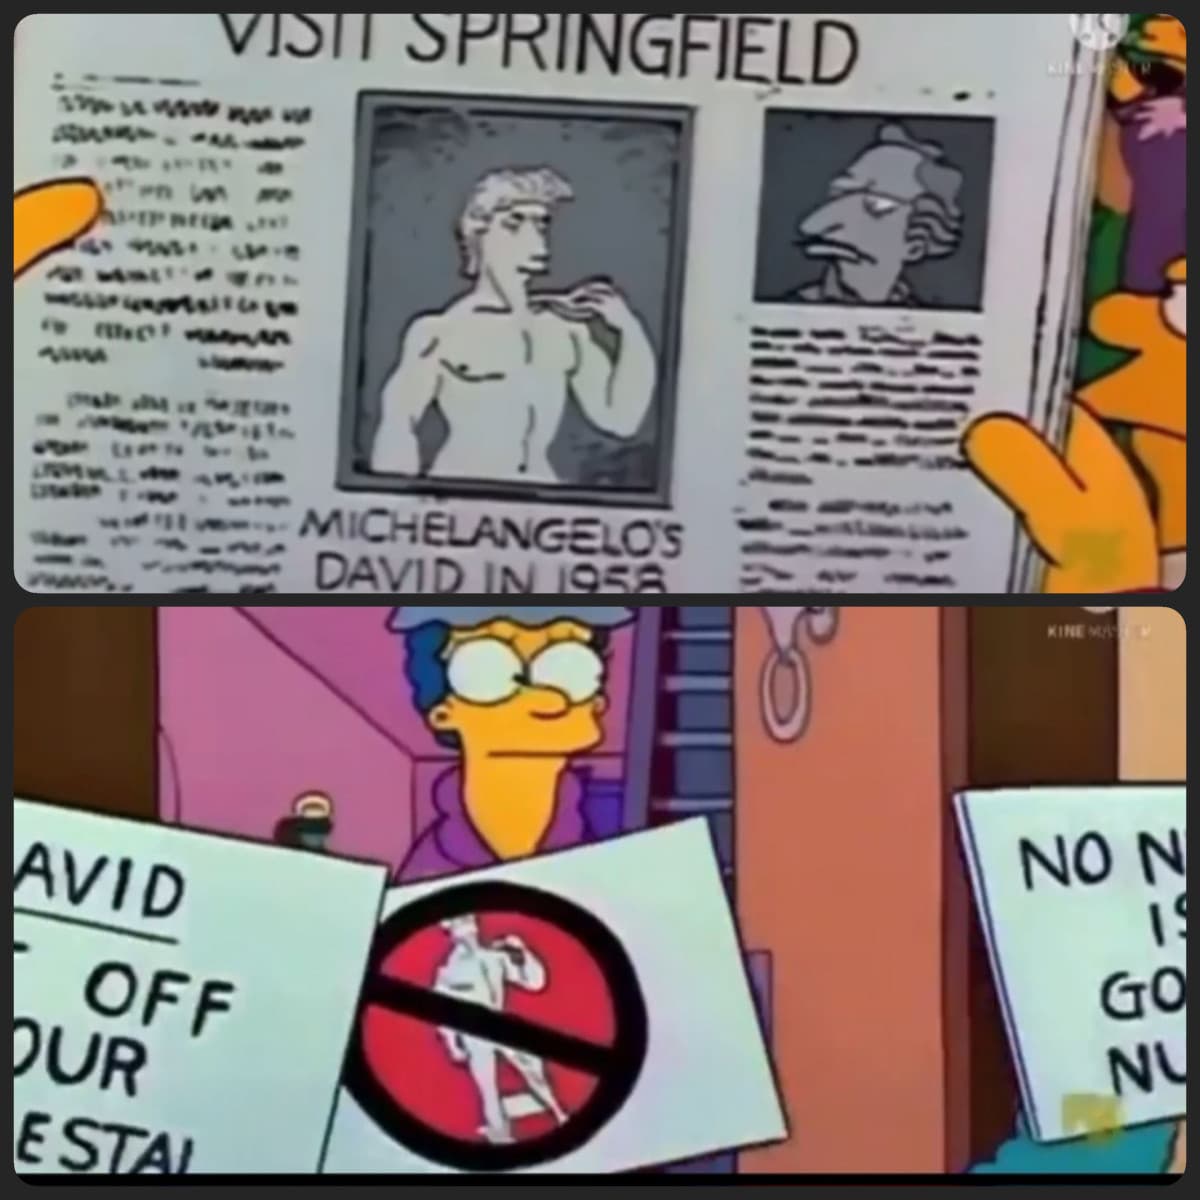 Non sapevo che I Simpson avessero predetto anche "l'oscenità" del David di Michelangelo.